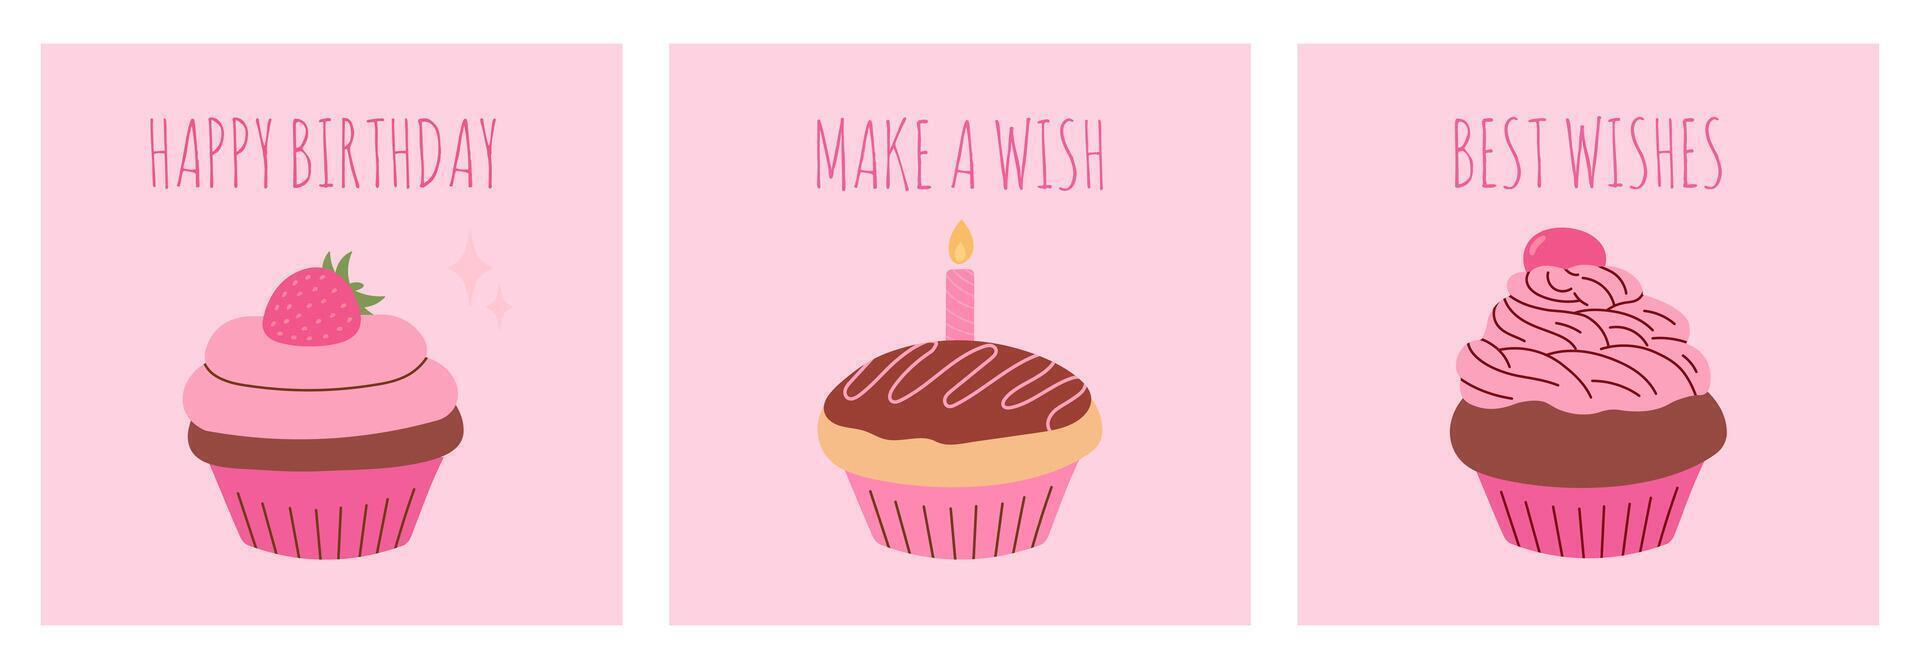 contento cumpleaños tarjeta colocar, rosado pastelitos, postales, celebracion, saludo tarjetas, vector ilustración